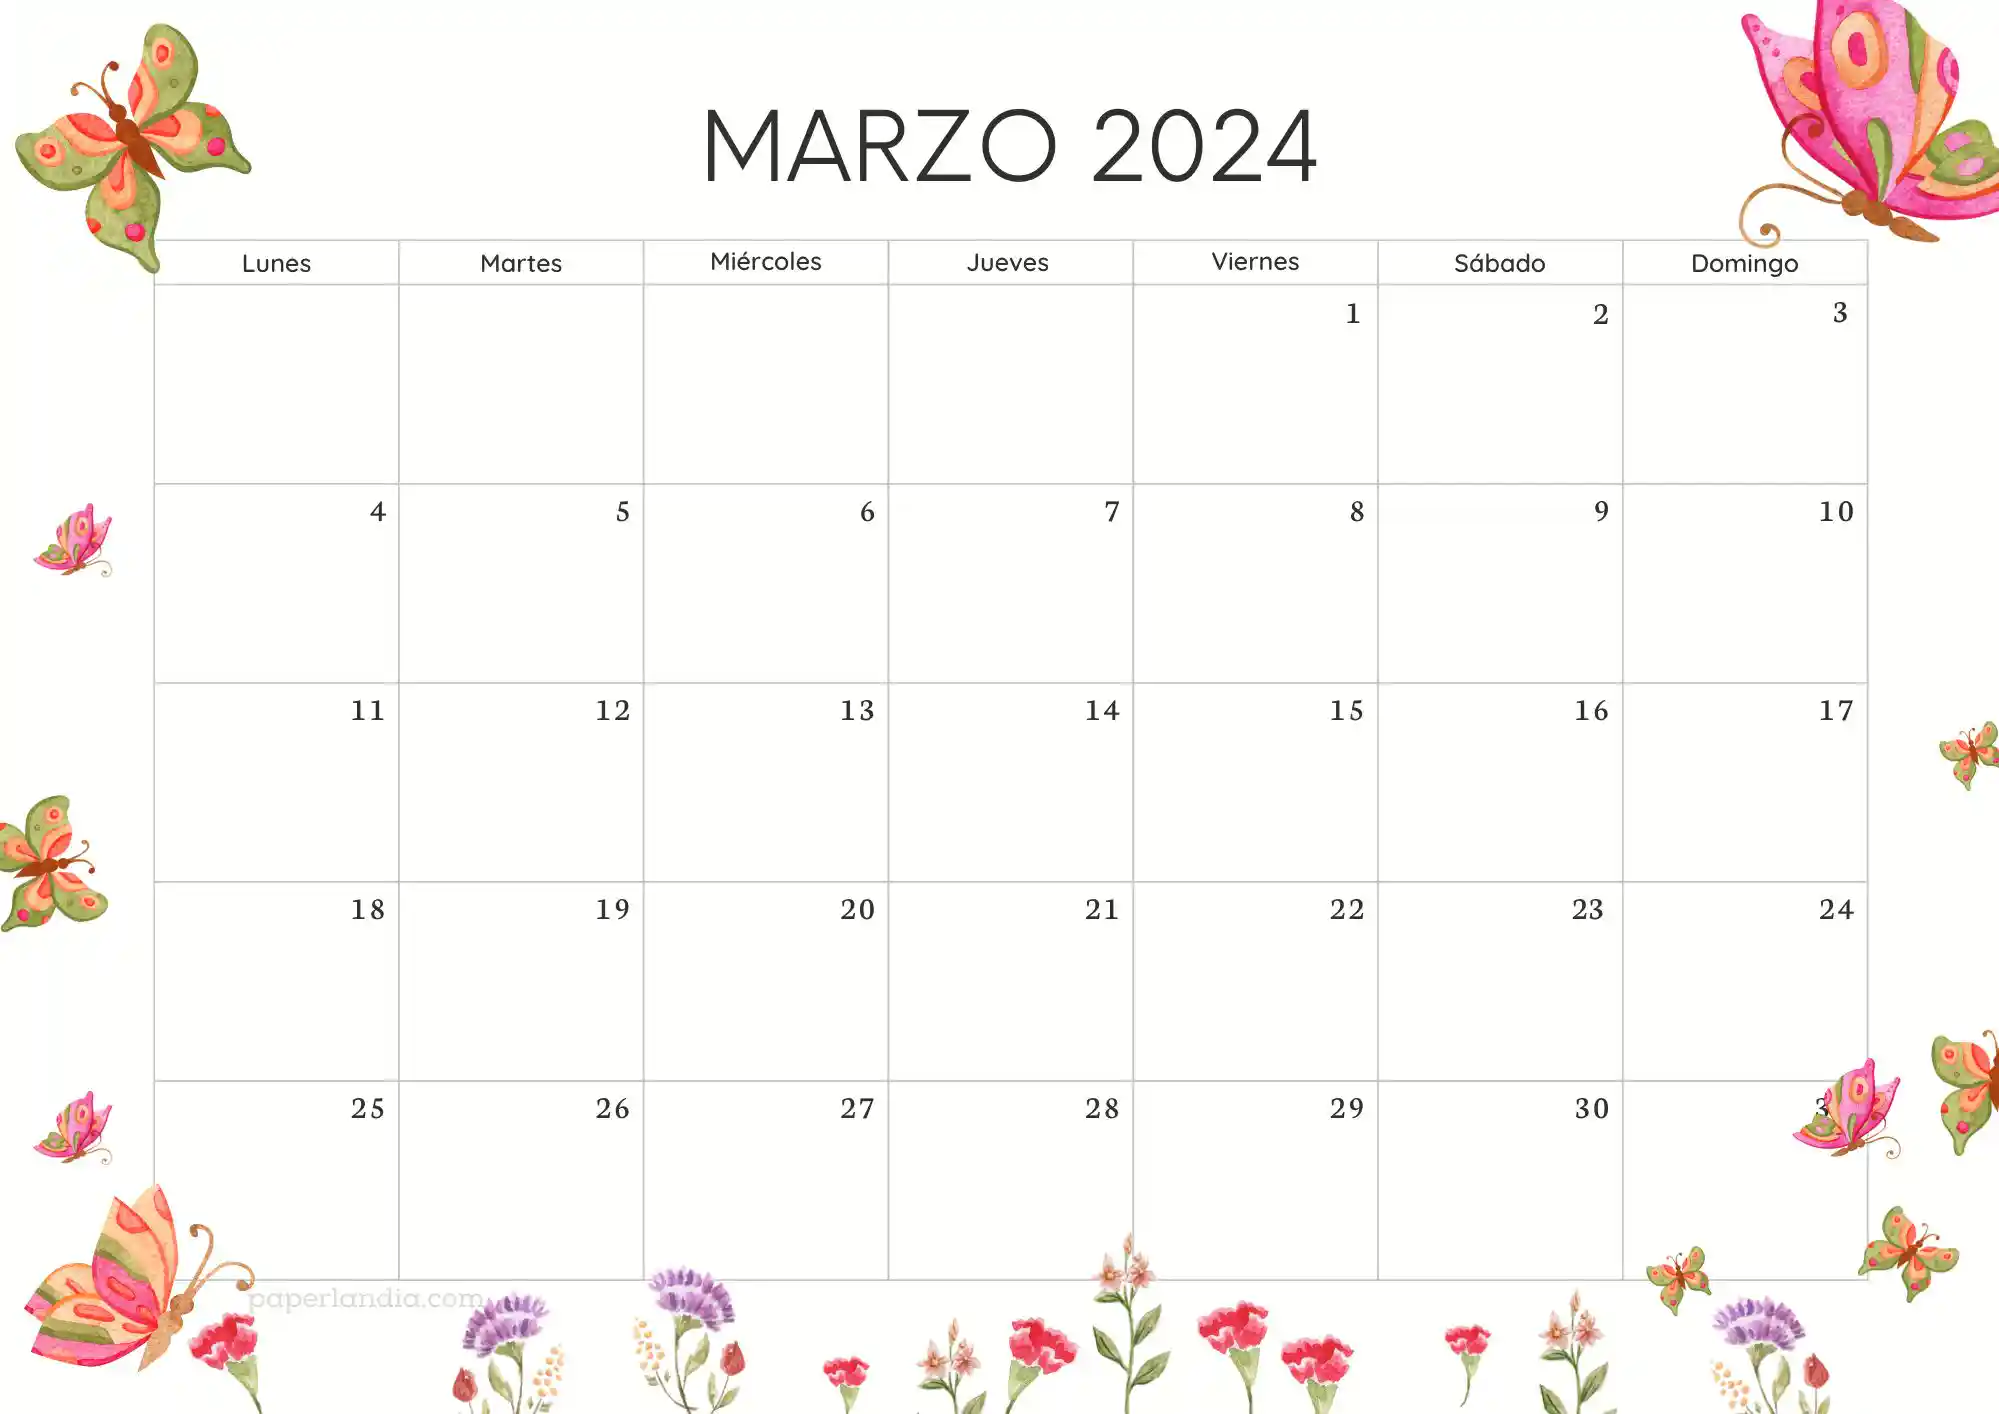 Calendario marzo 2024 horizontal con mariposas